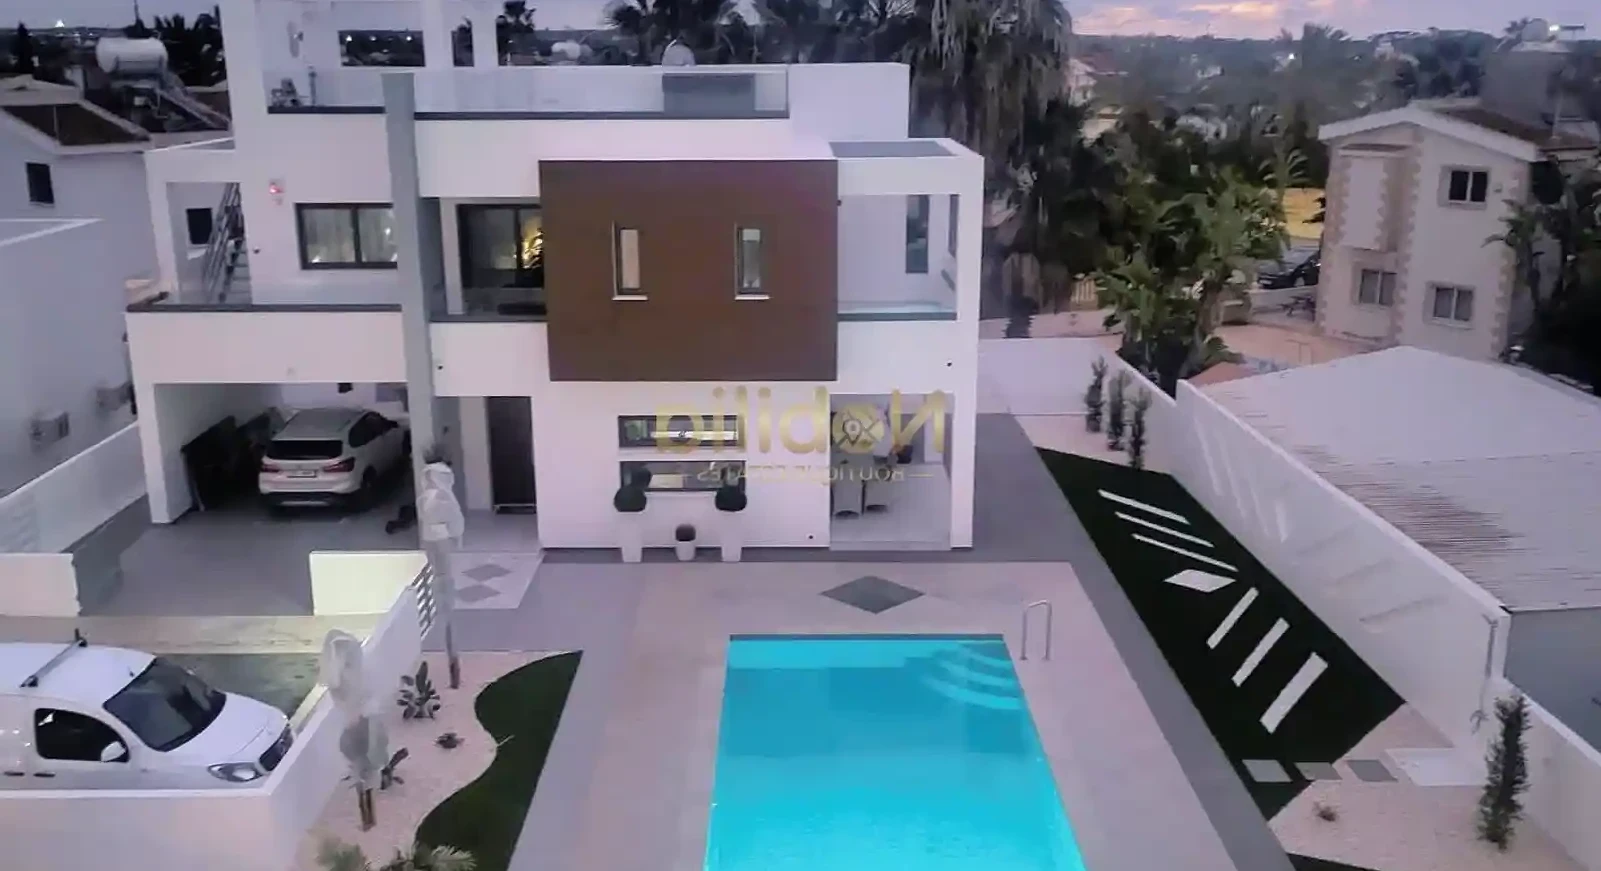 3-bedroom villa to rent €3.500, image 1